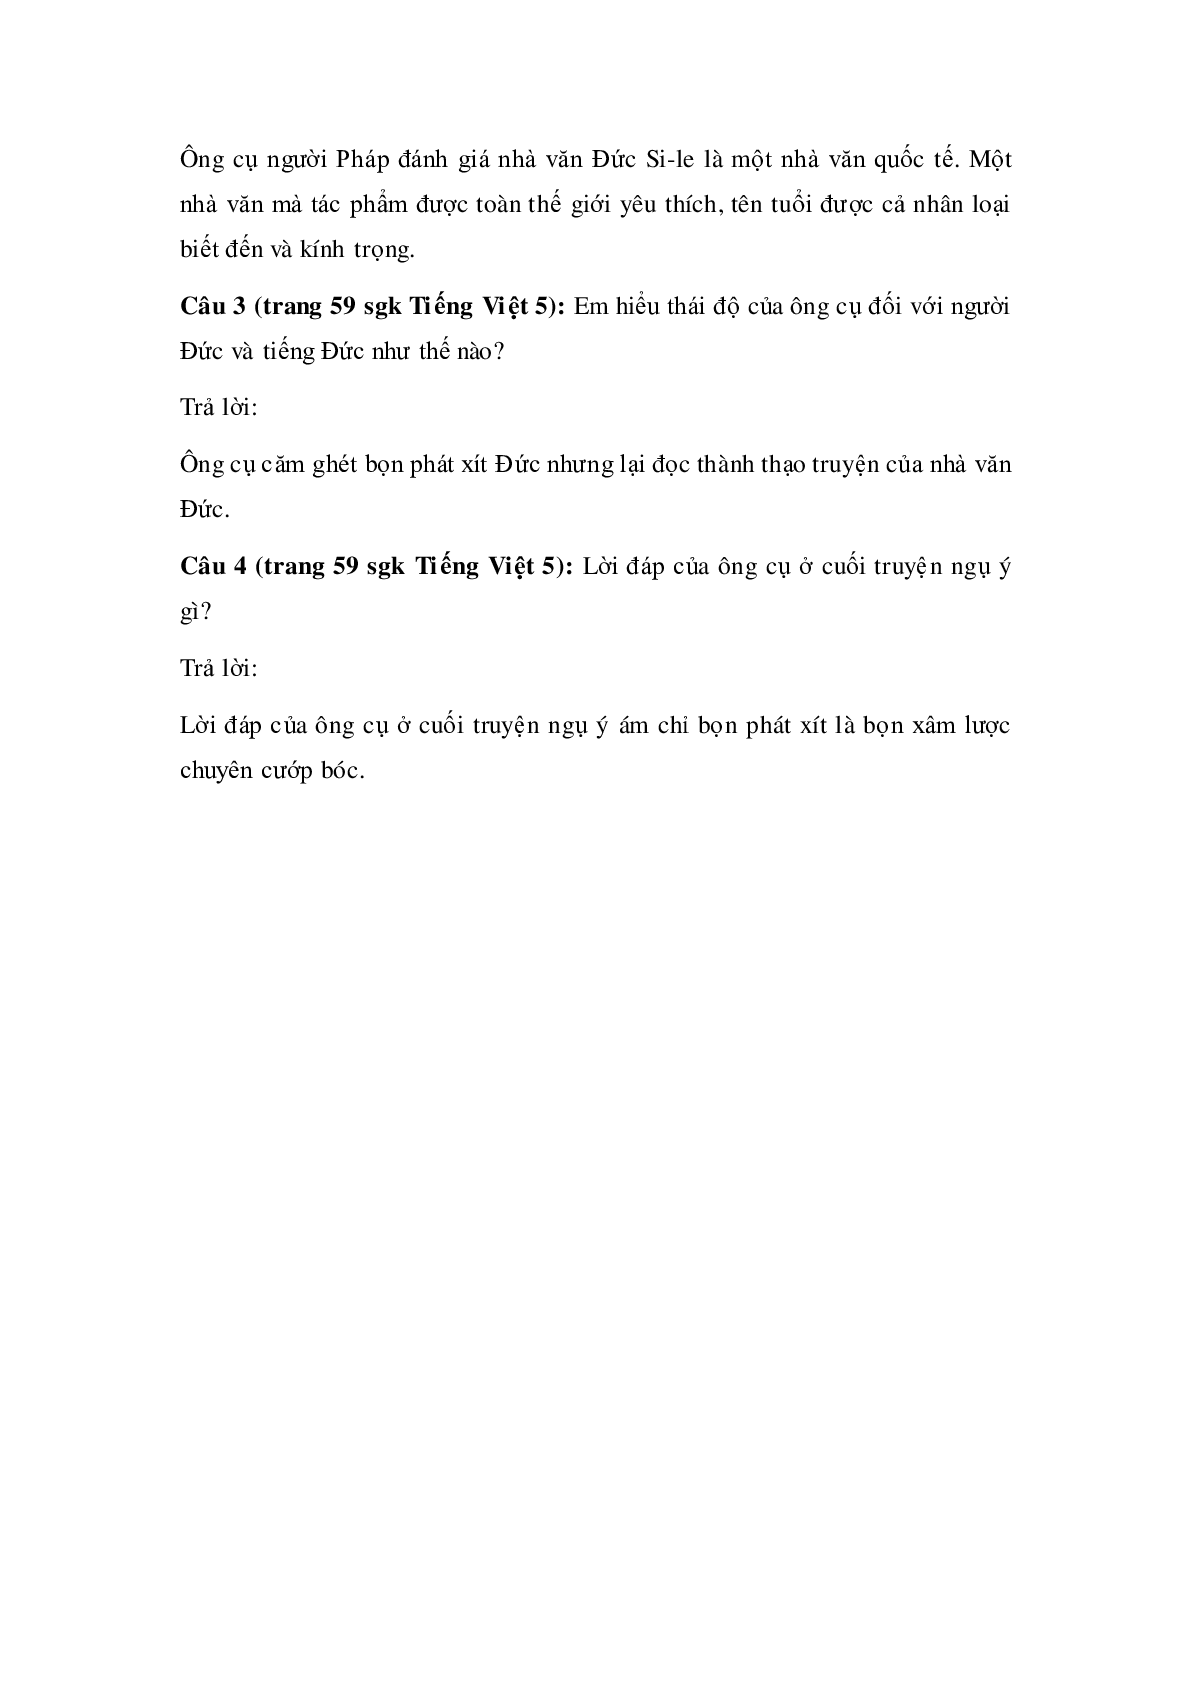 Soạn Tiếng Việt lớp 5: Tập đọc: Tác phẩm của Si-le và tên phát xít mới nhất (trang 3)